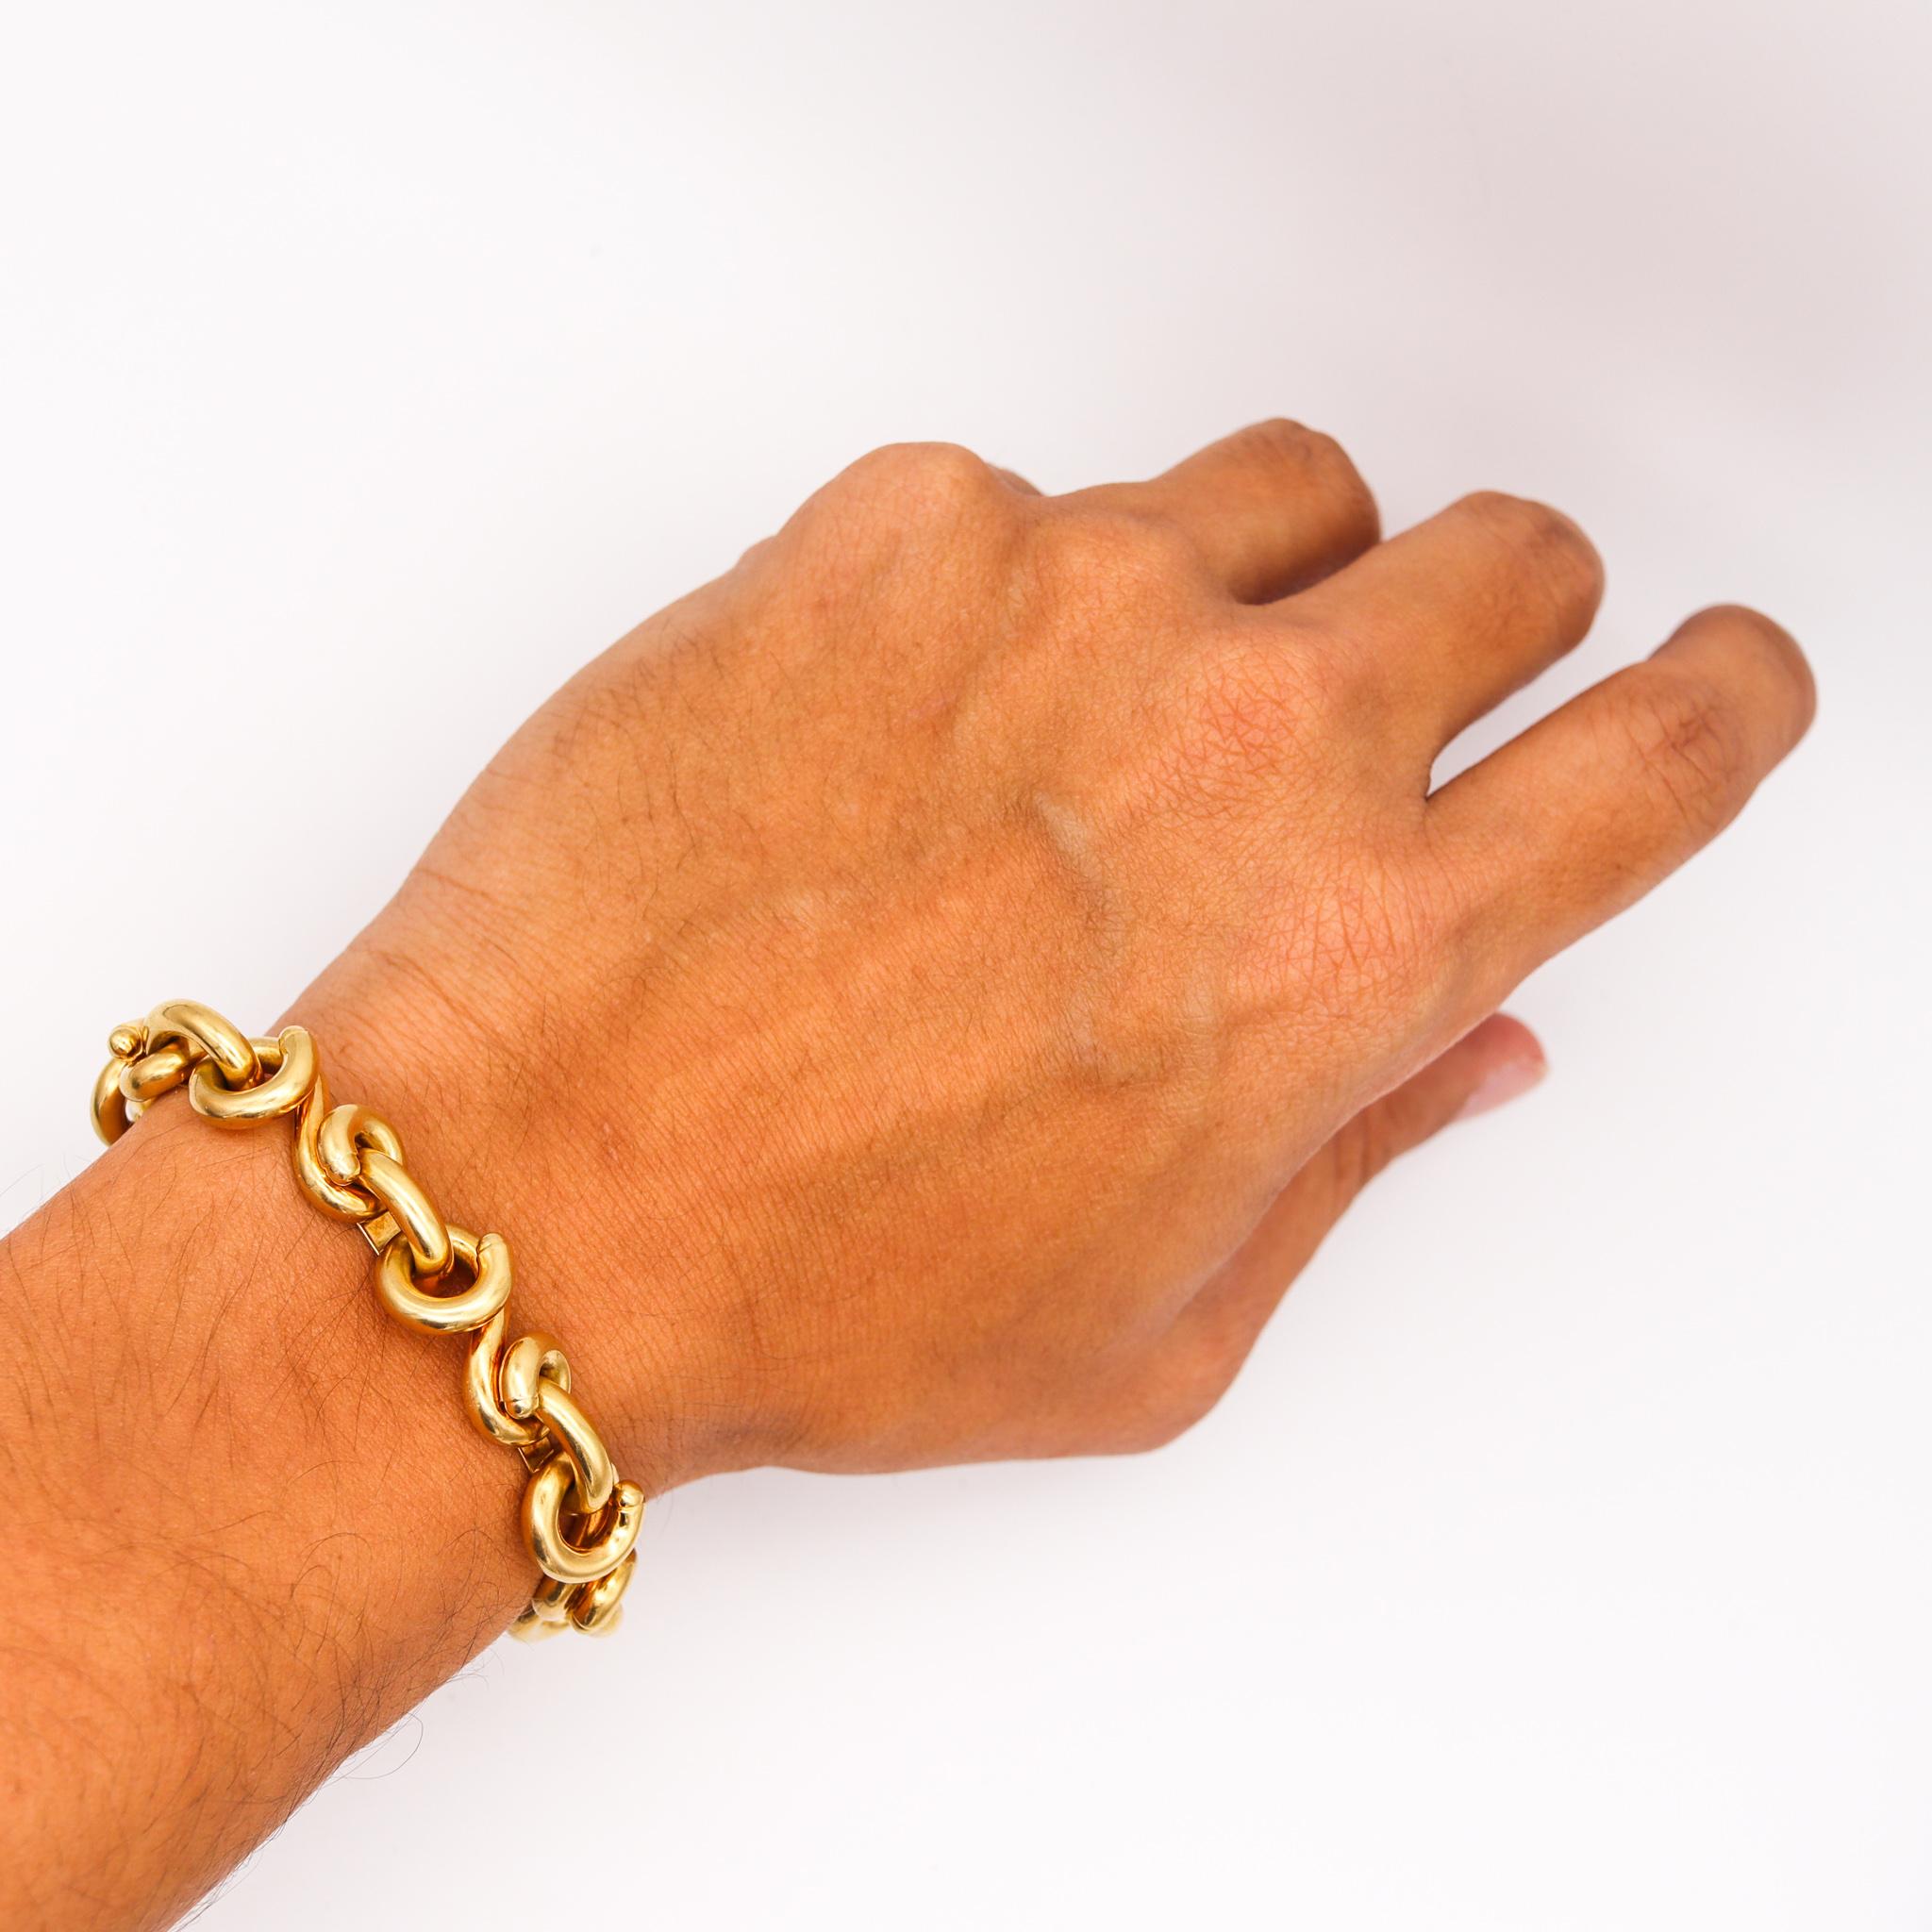 Women's or Men's Van Cleef & Arpels 1970 Paris Twisted Links Bracelet in 18 Kt Yellow Gold